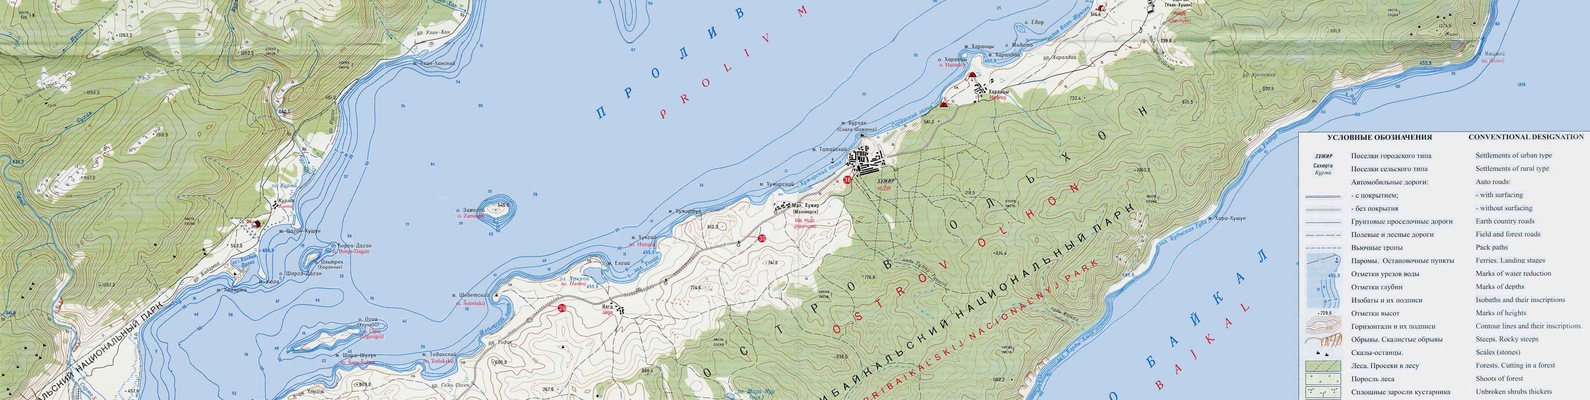 Где находится байкальское море. Карта острова Ольхон и малого моря подробная. Остров Ольхон на карте. Карта глубин Байкала Малое море. Пролив Малое море Байкал на карте.